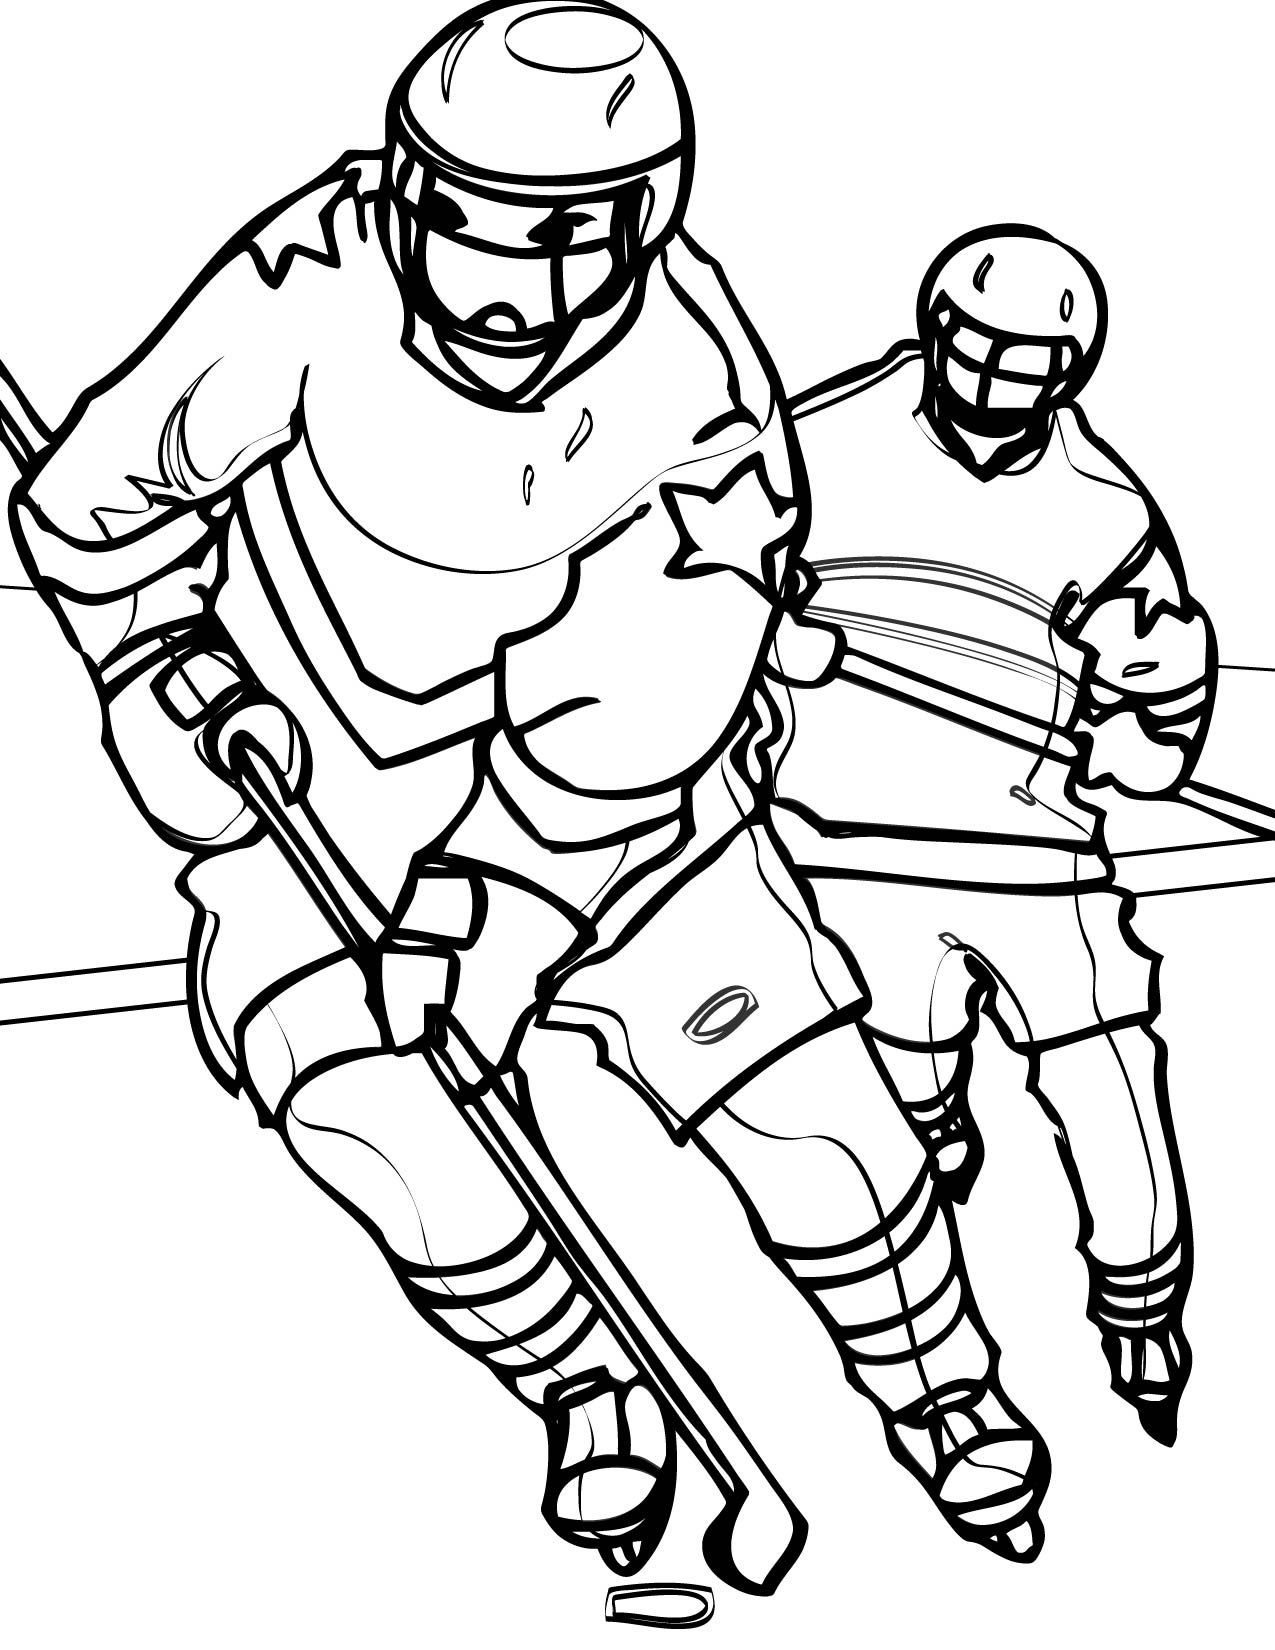 free printable sports coloring pages ausmalbilder für kinder malvorlagen und malbuch sports pages printable free sports coloring 